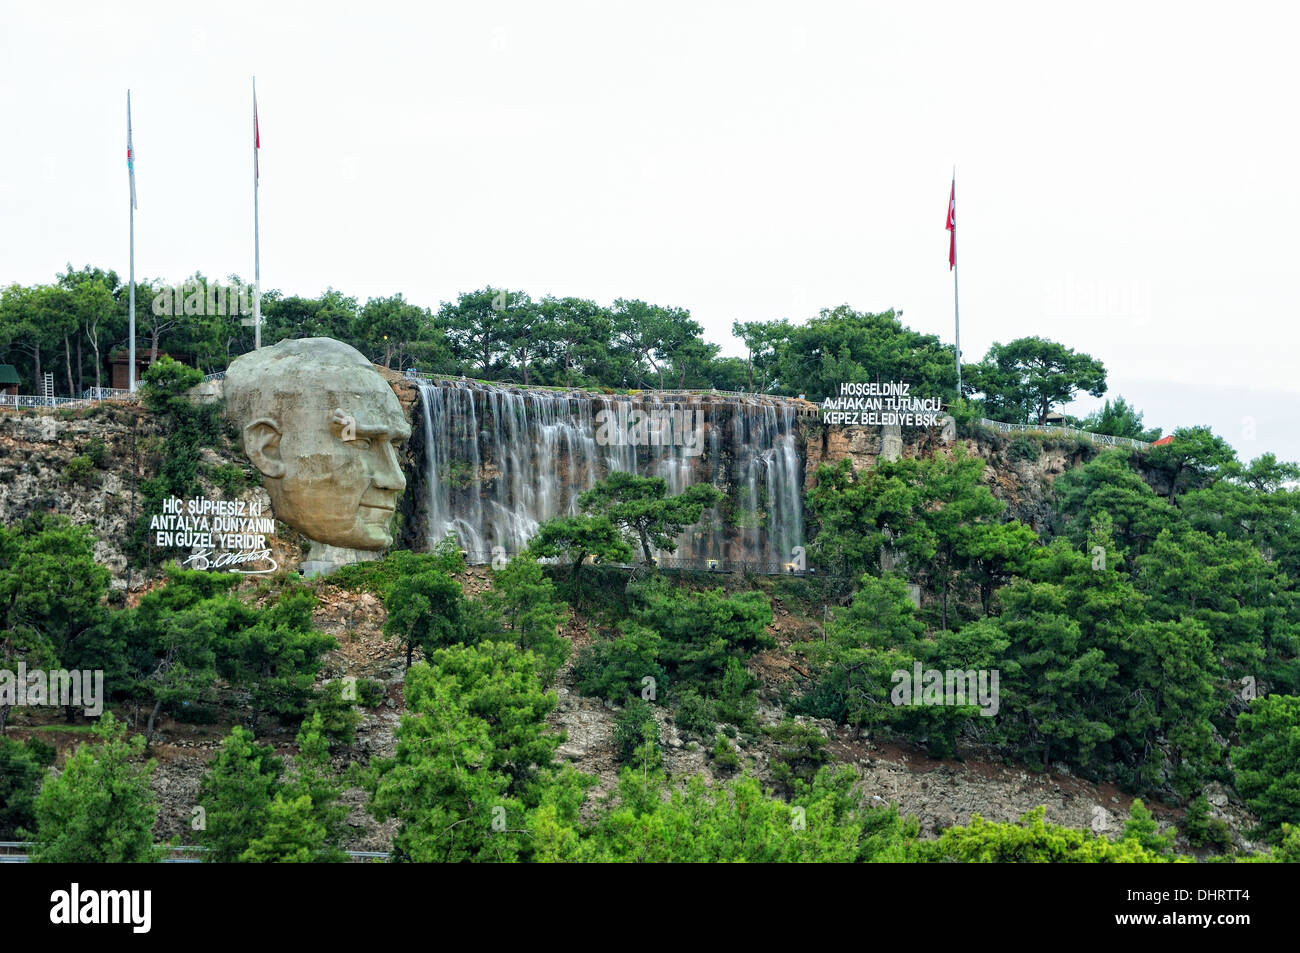 Waterfall in honor of Ataturk above Antalya Stock Photo